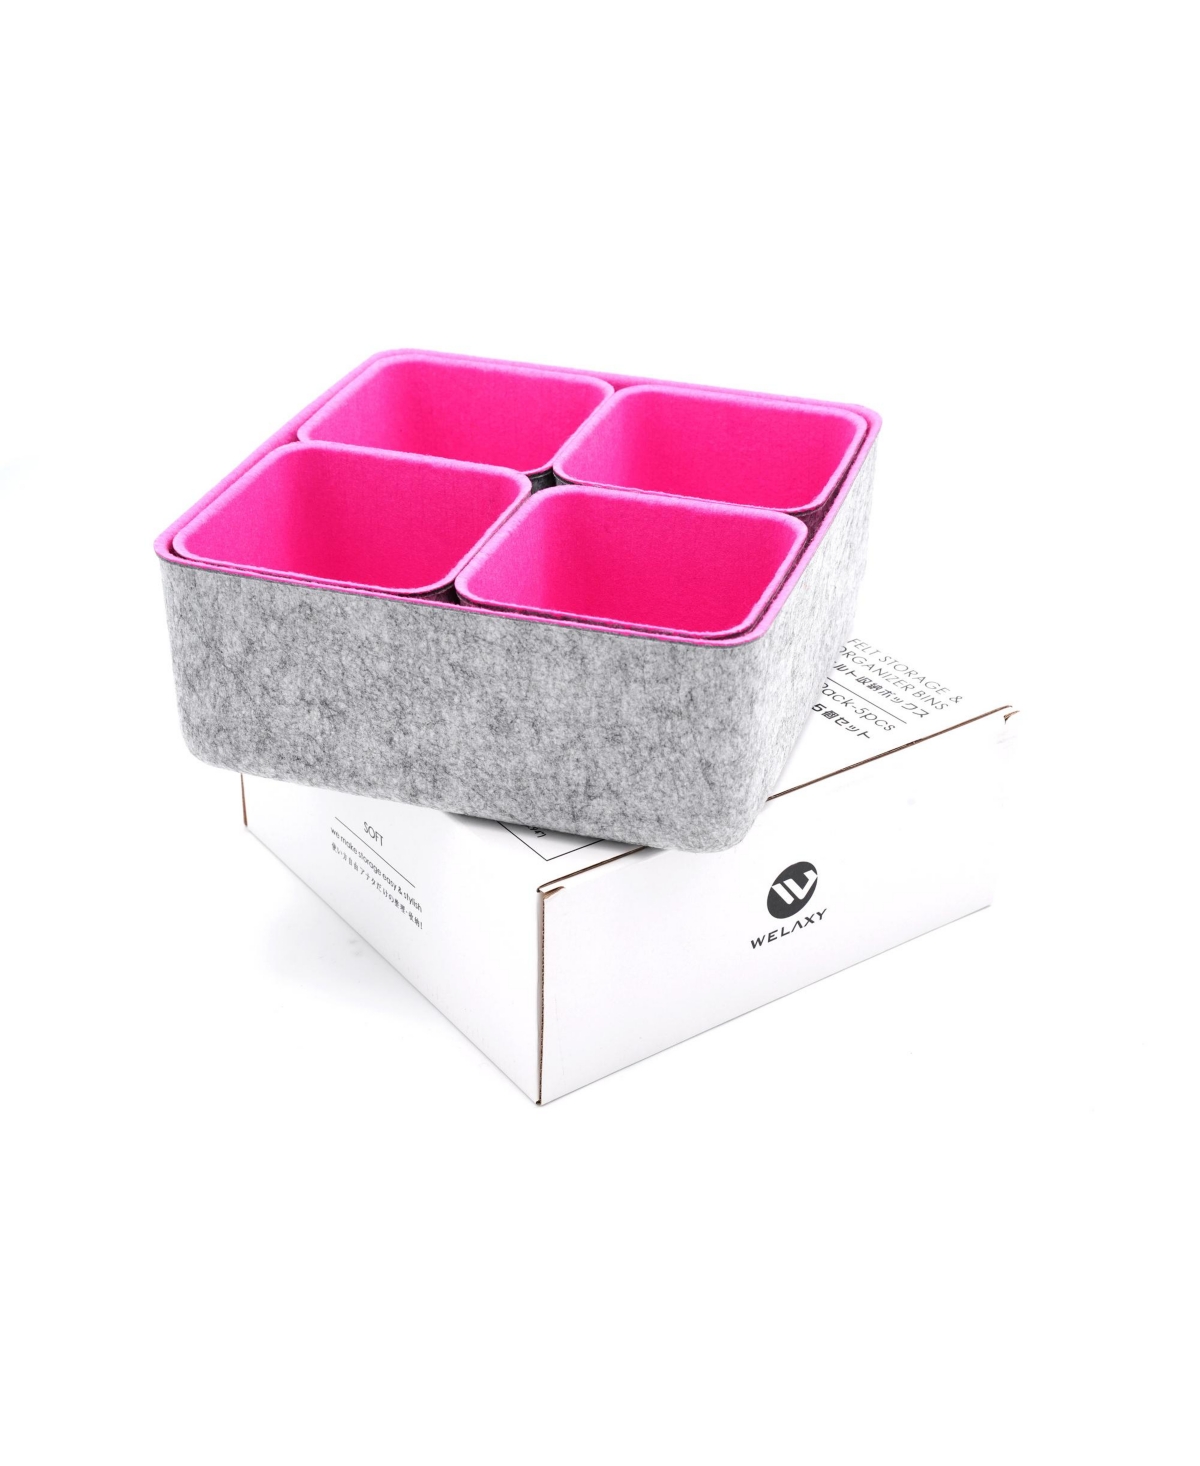 5 Piece Square Felt Storage Bin Set - Hot Pink